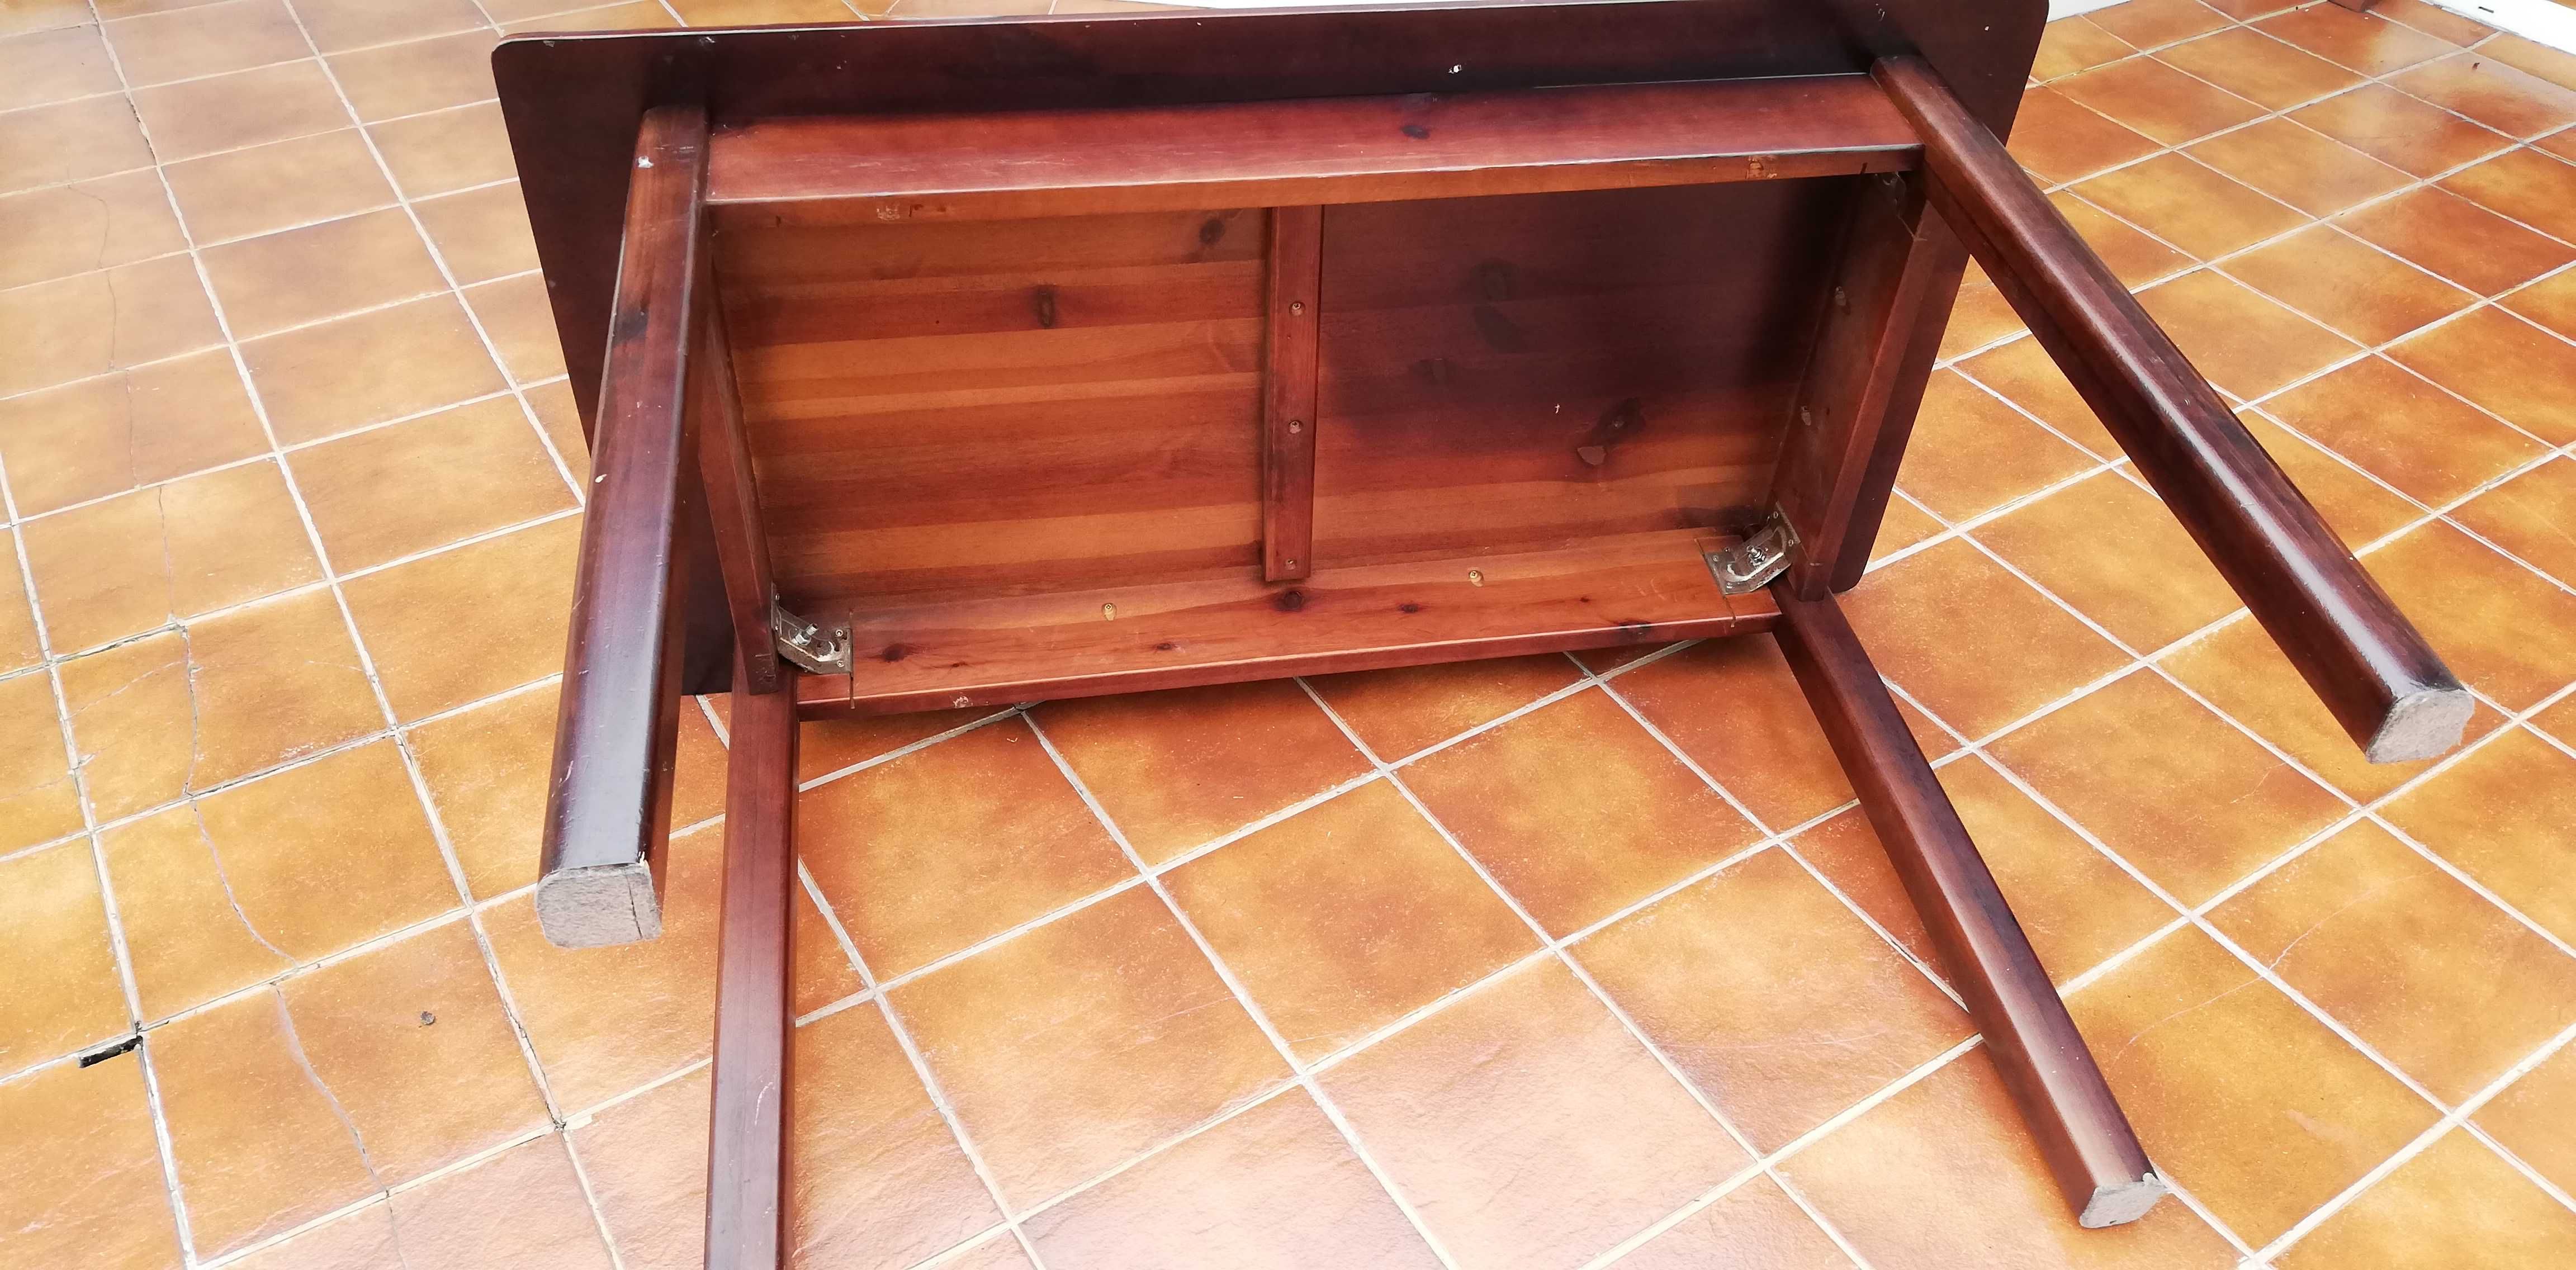 Stół prostokątny drewniany ciemny 4 nogi do salonu kuchni biurko